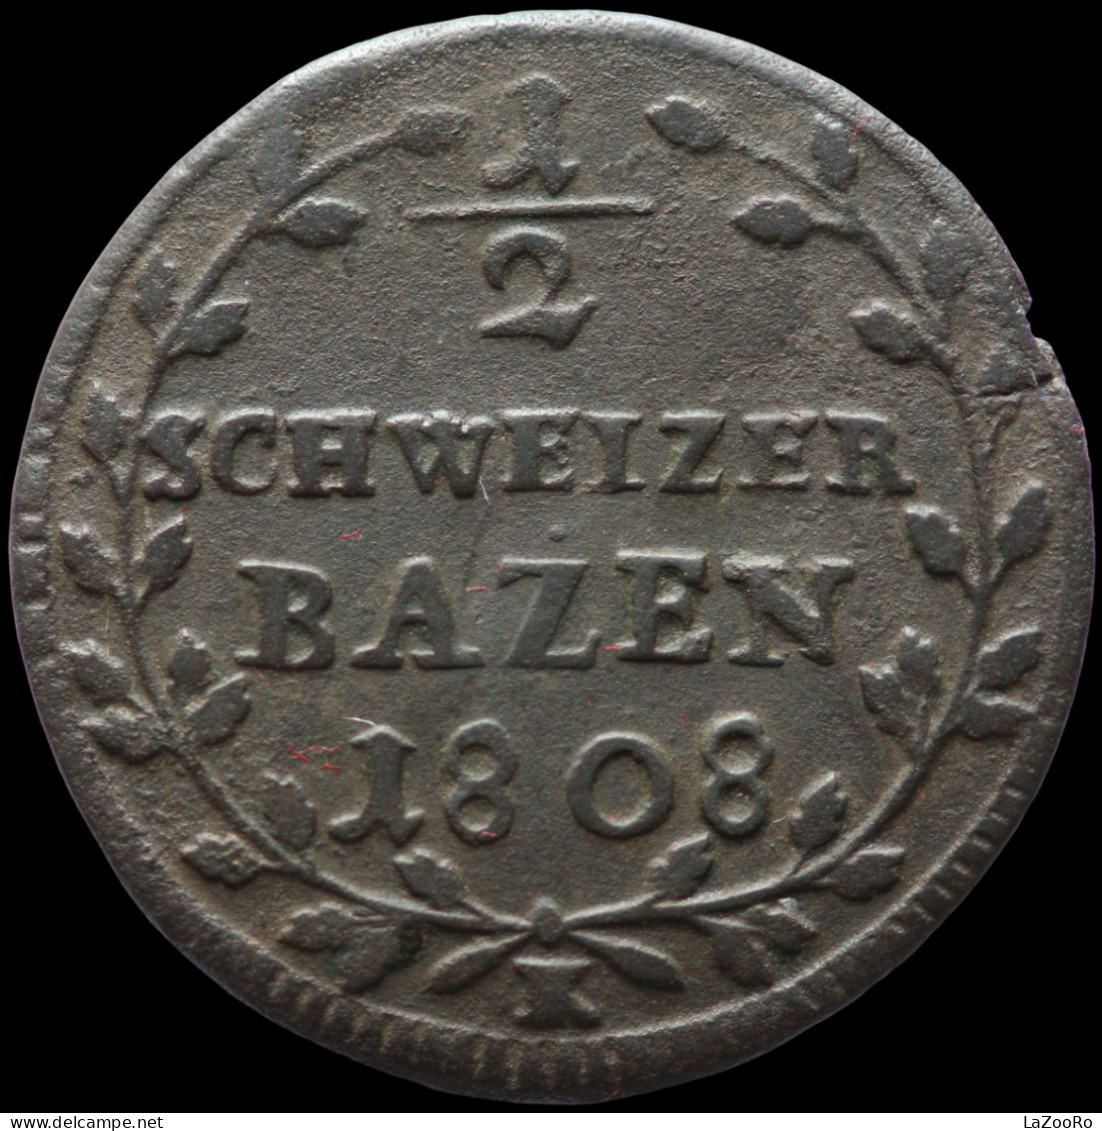 LaZooRo: Switzerland SAINT GALL 1/2 Batzen 1808 VF - Silver - Cantonal Coins